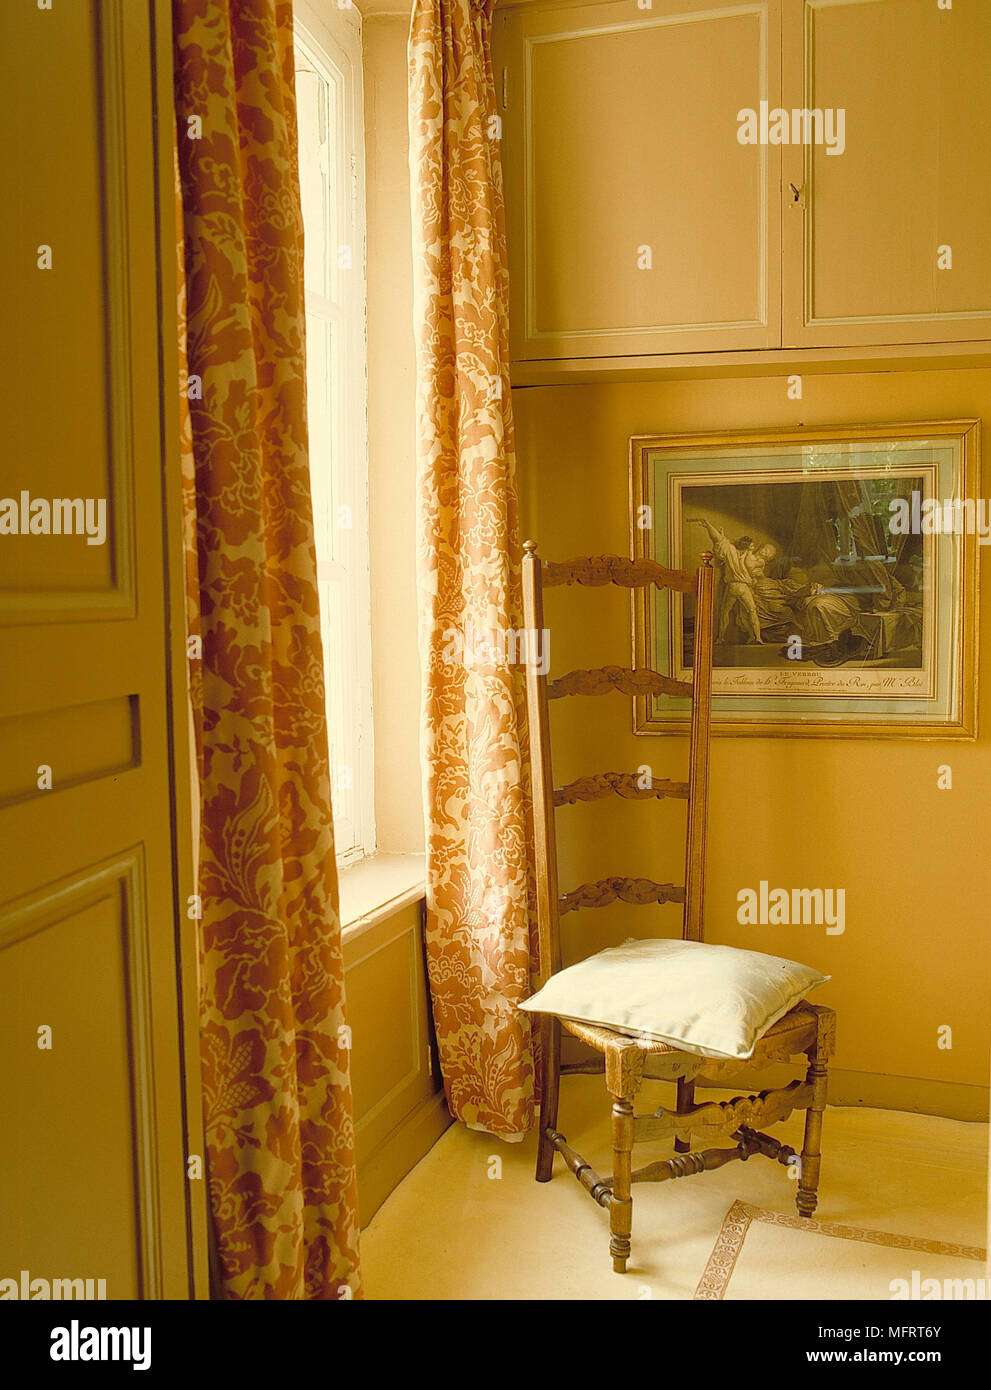 Hohe gesichert Stuhl in der Ecke traditionelle Schlafzimmer gelben Wänden Kissen Einbauschränke gerahmtes Bild Interieur Schlafzimmer Fenster Detail Behandlungen drap Stockfoto